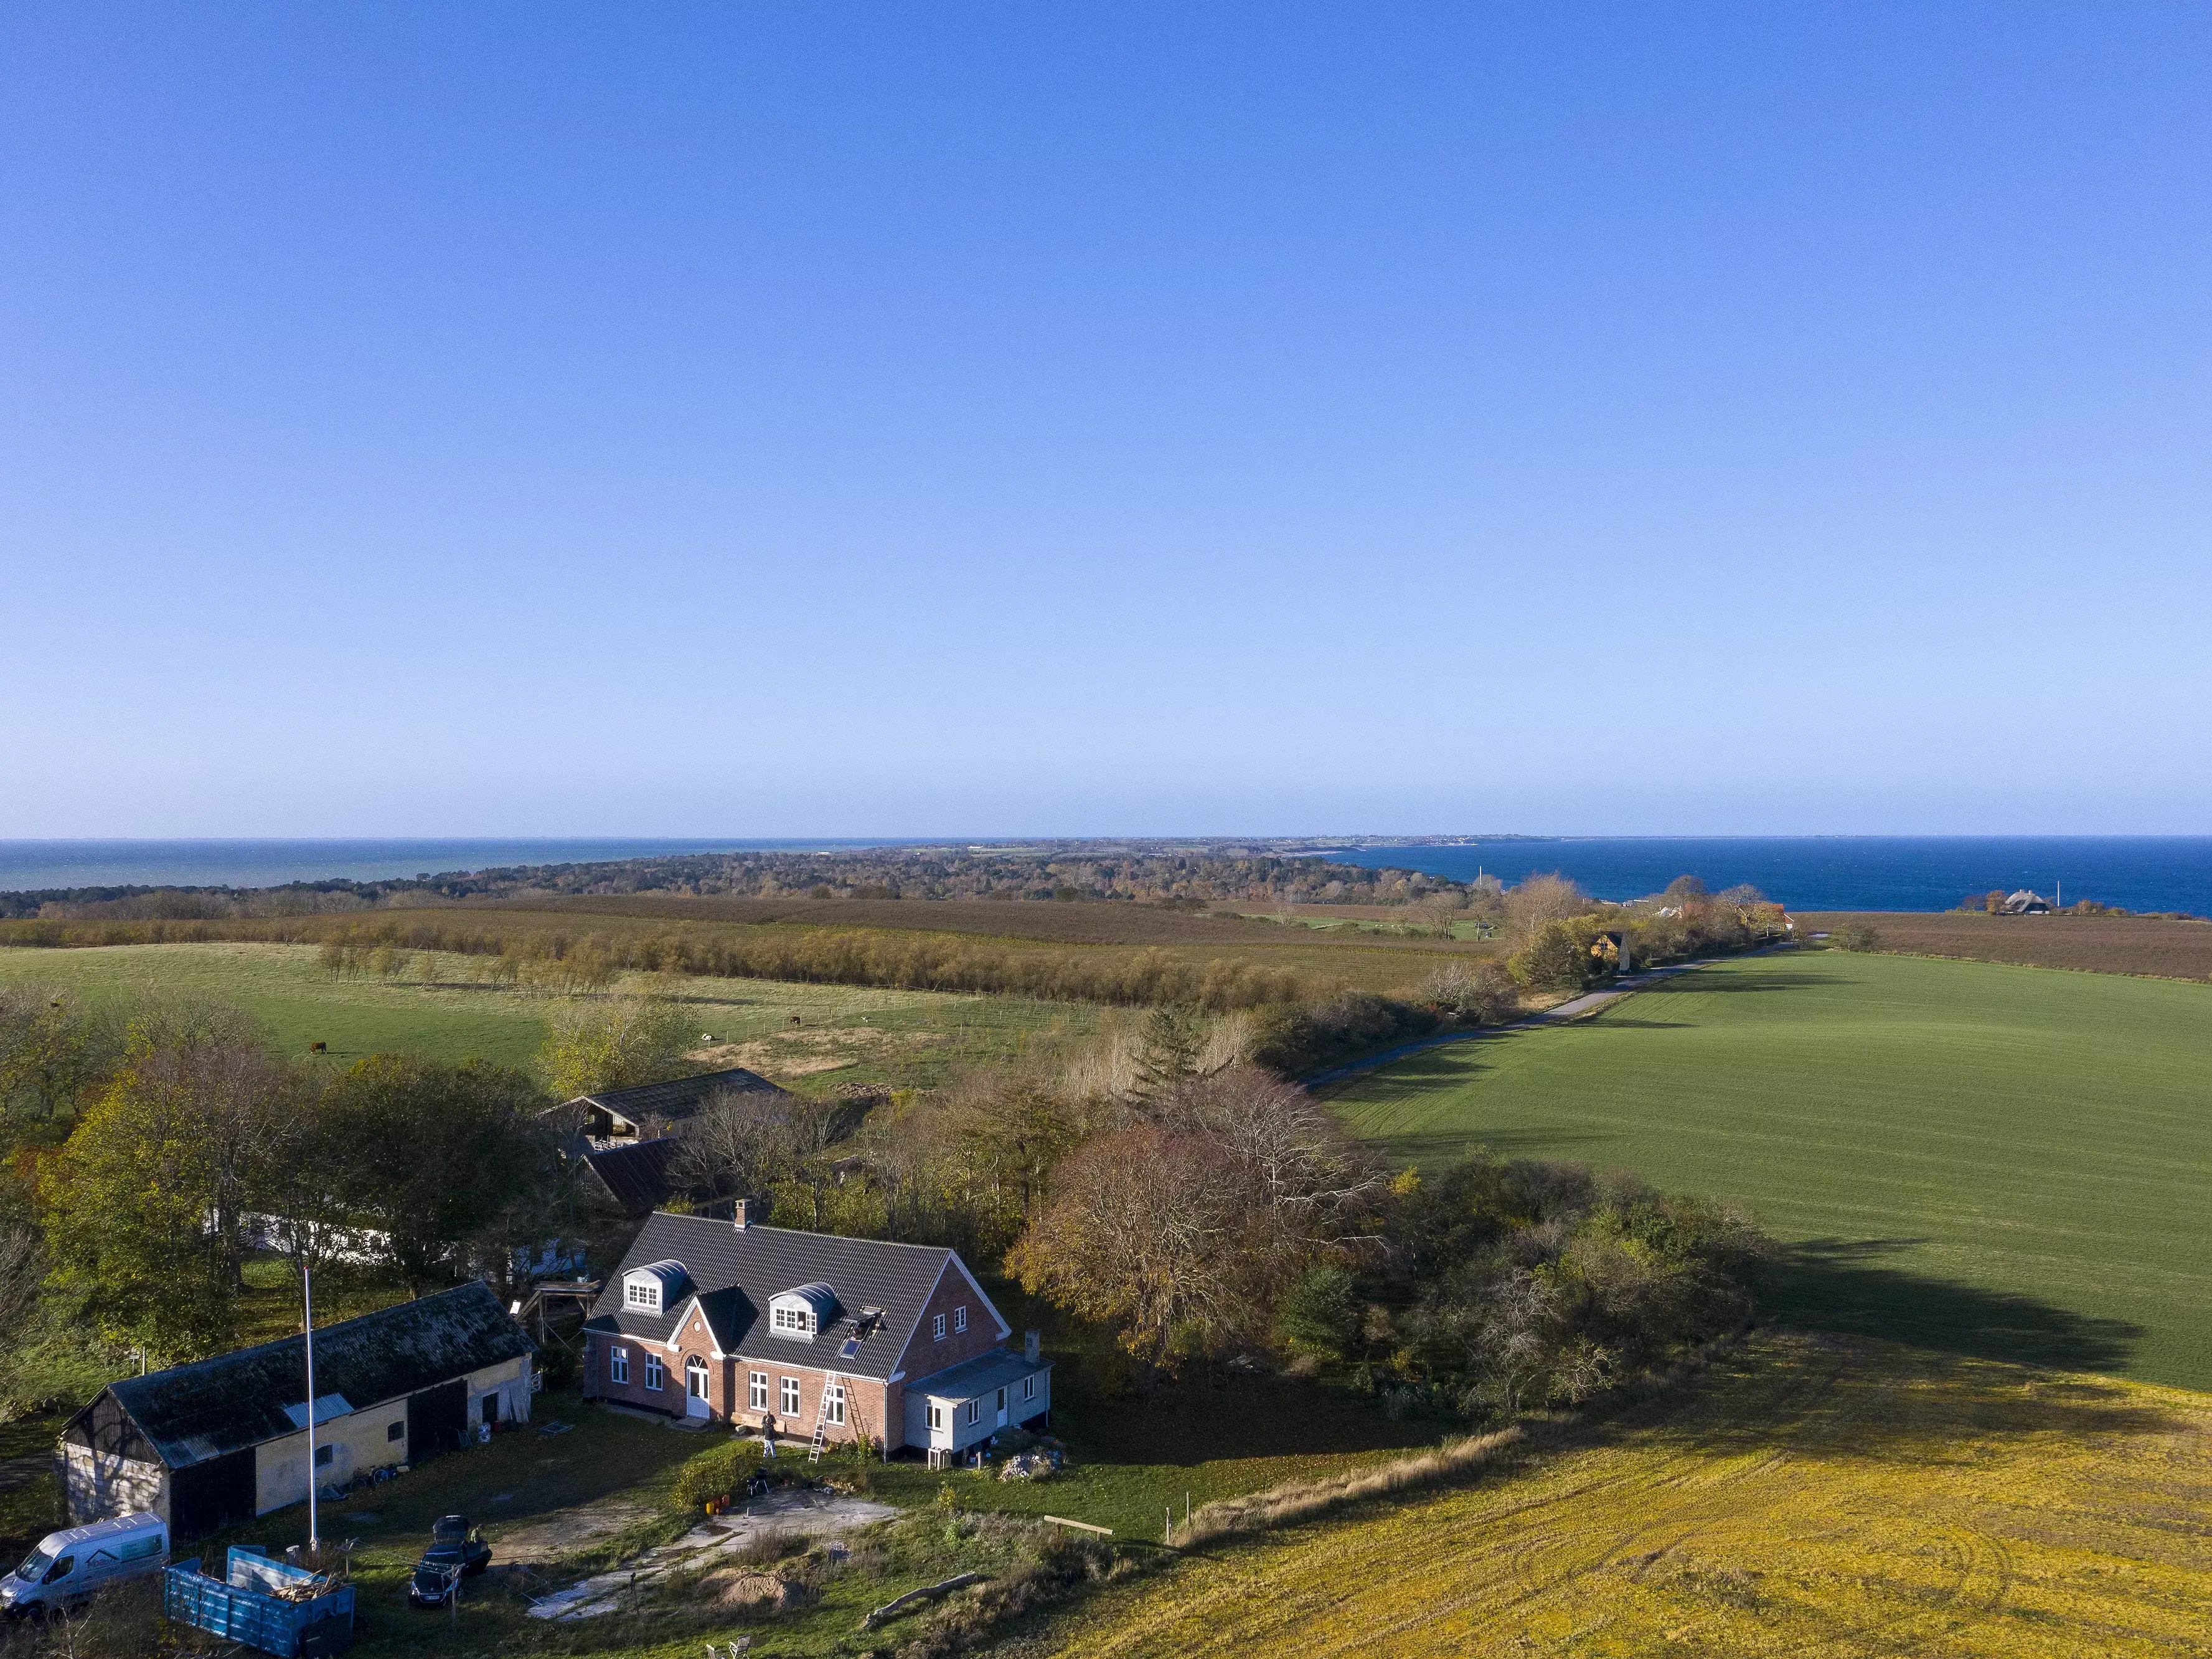 Vue aérienne d'une maison individuelle en campagne près de la mer avec des champs verts aux alentours.